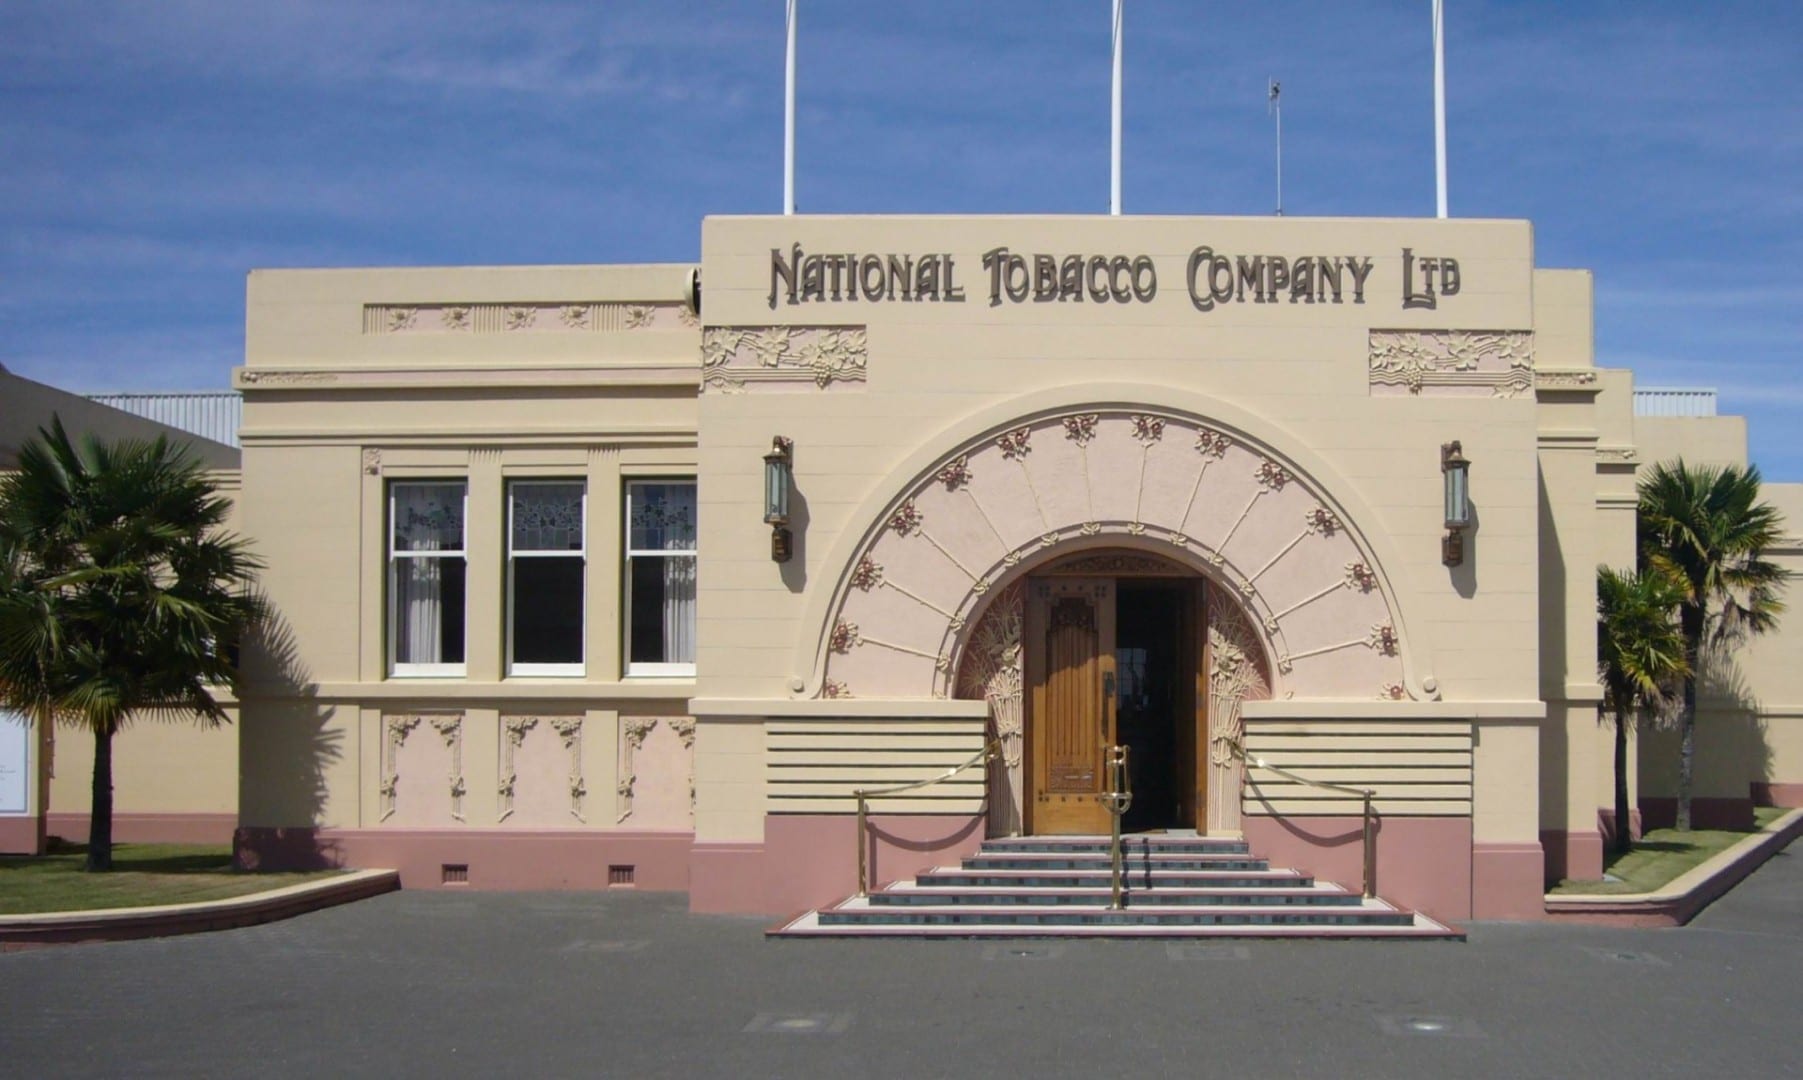 El edificio de la Compañía Nacional de Tabaco (1933), uno de los muchos edificios Art Decó de Napier Napier Nueva Zelanda